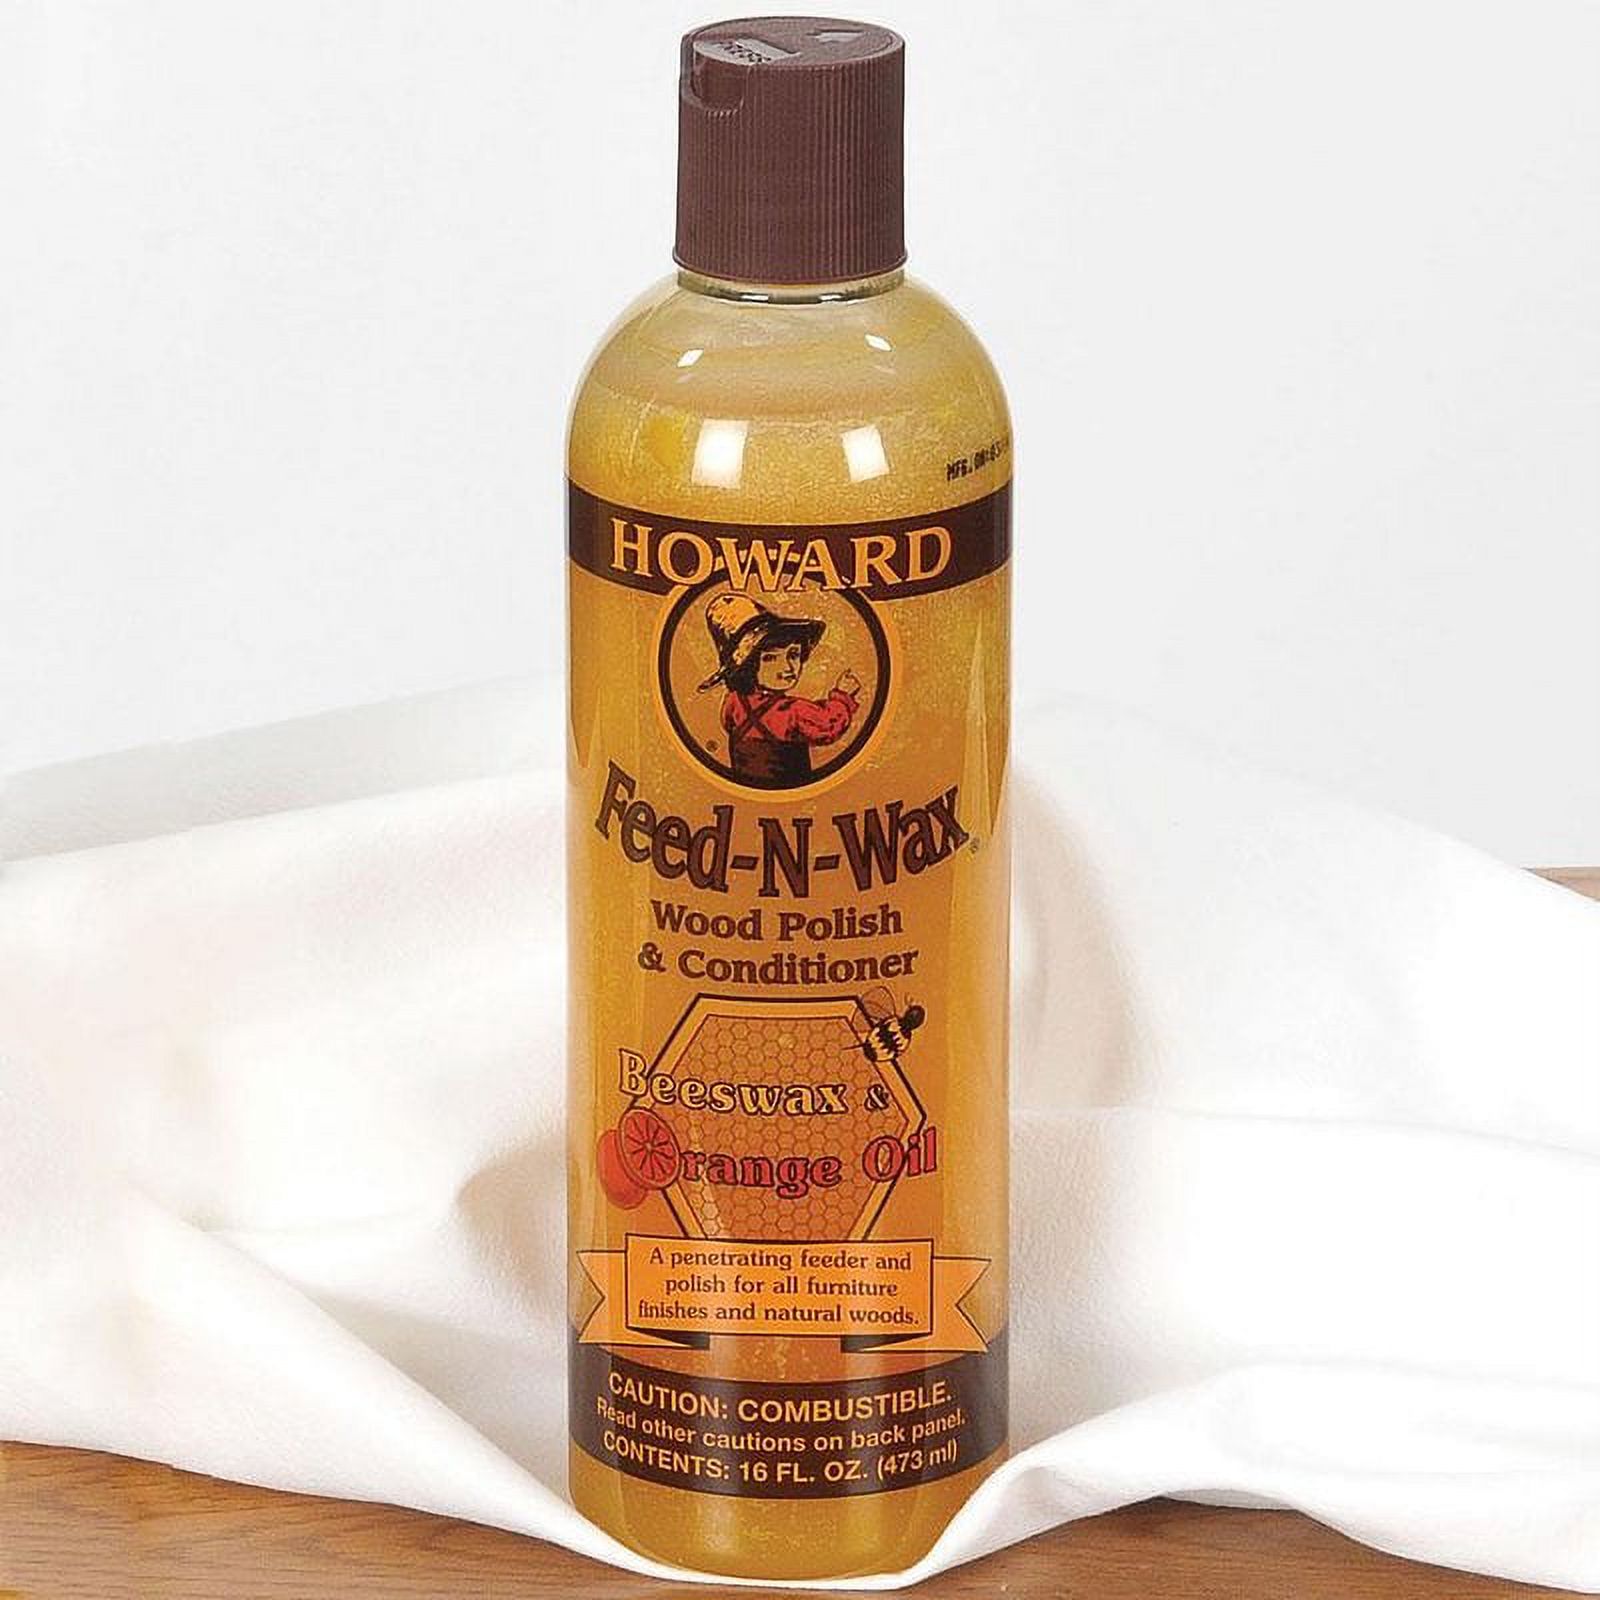 Howard Feed-N-Wax Carnauba Wax Beeswax and Orange Oil Wood Polish & Conditioner, 8 oz - image 1 of 3